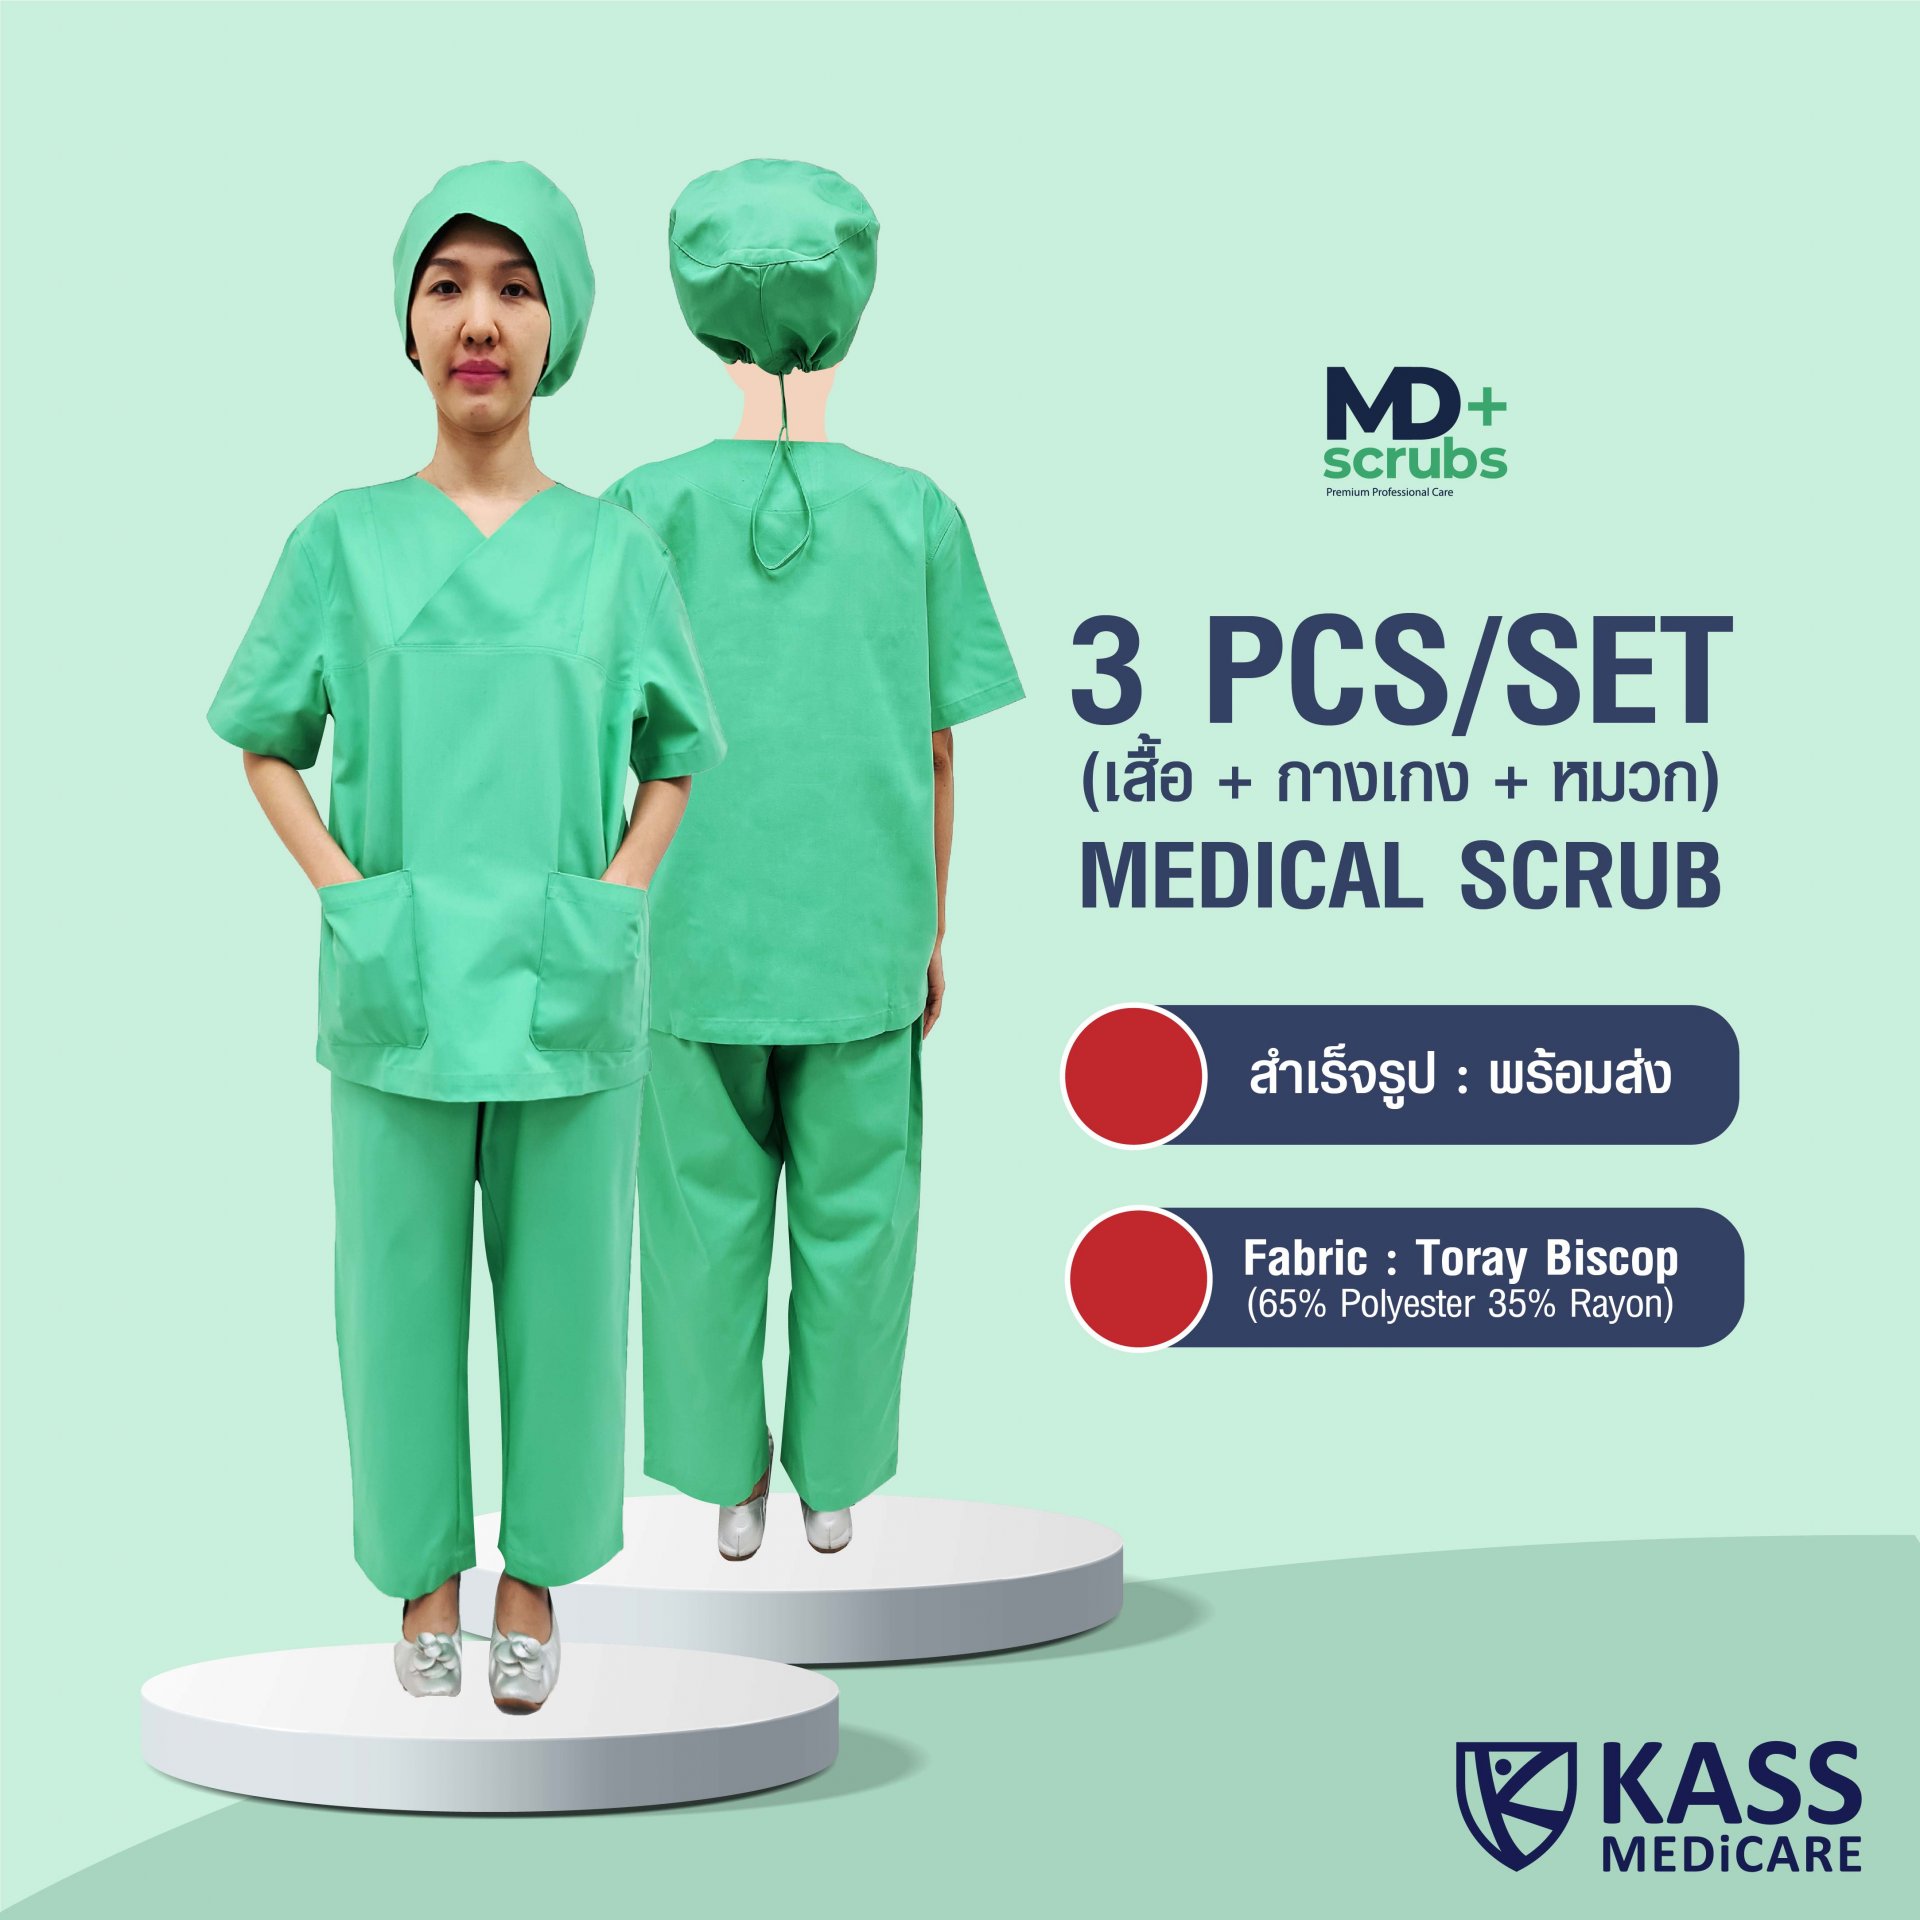 ชุดสครับทางการเเพทย์ 3Pcs/Set ผ้าโทเรบิสคอบ (Toray Biscop) ยี่ห้อ MDScrubs Plus